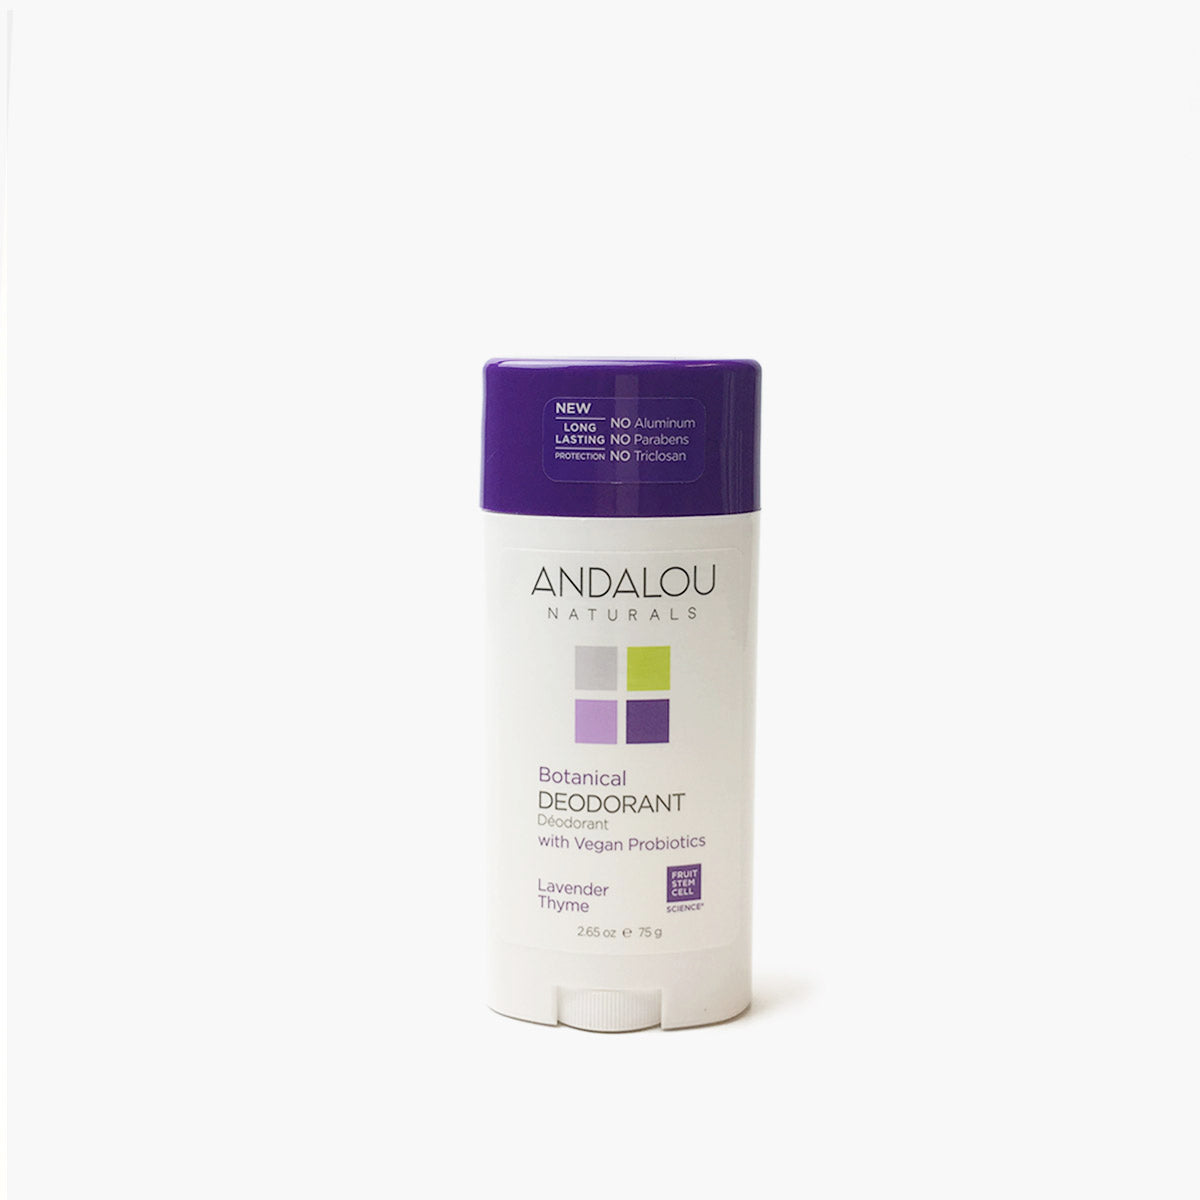 Botanical Deodorant - Lavender Thyme - Andalou Naturals US